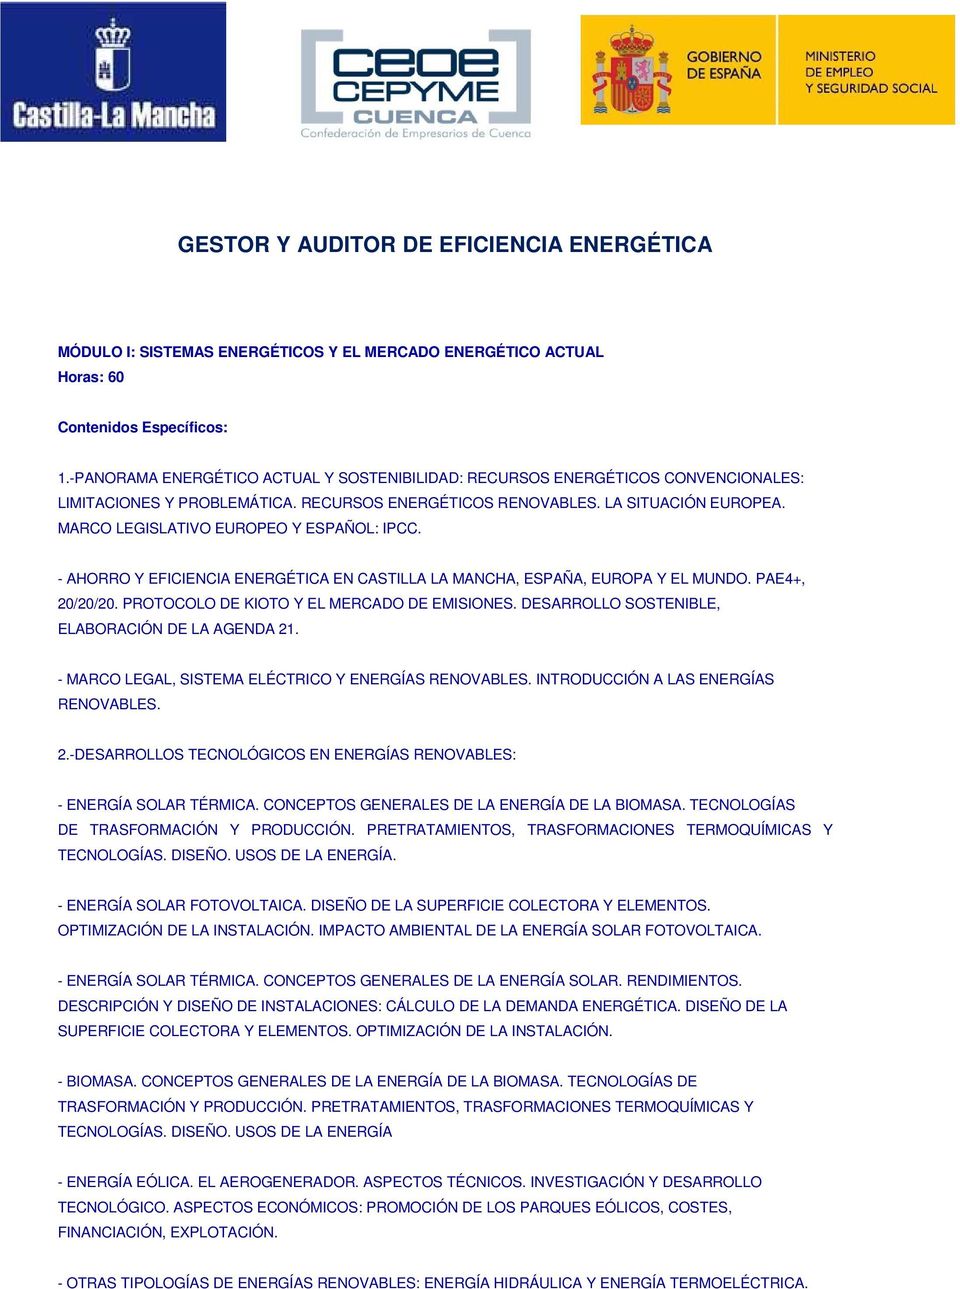 MARCO LEGISLATIVO EUROPEO Y ESPAÑOL: IPCC. - AHORRO Y EFICIENCIA ENERGÉTICA EN CASTILLA LA MANCHA, ESPAÑA, EUROPA Y EL MUNDO. PAE4+, 20/20/20. PROTOCOLO DE KIOTO Y EL MERCADO DE EMISIONES.